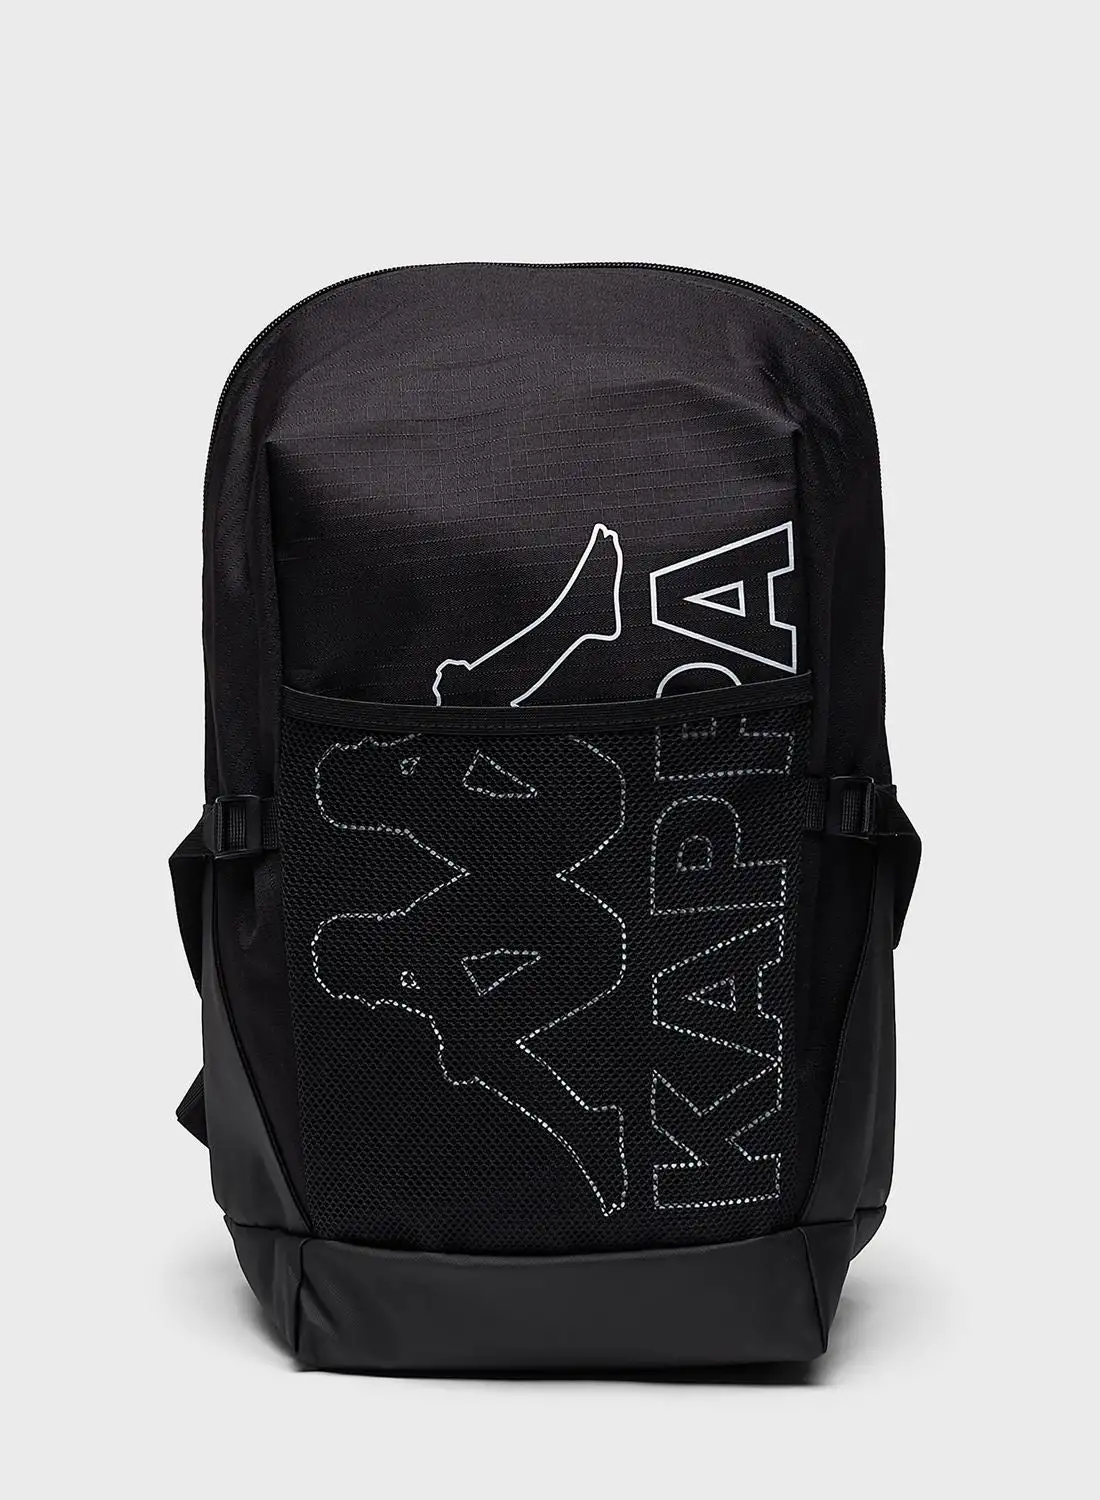 Kappa Logo Printed Backpack